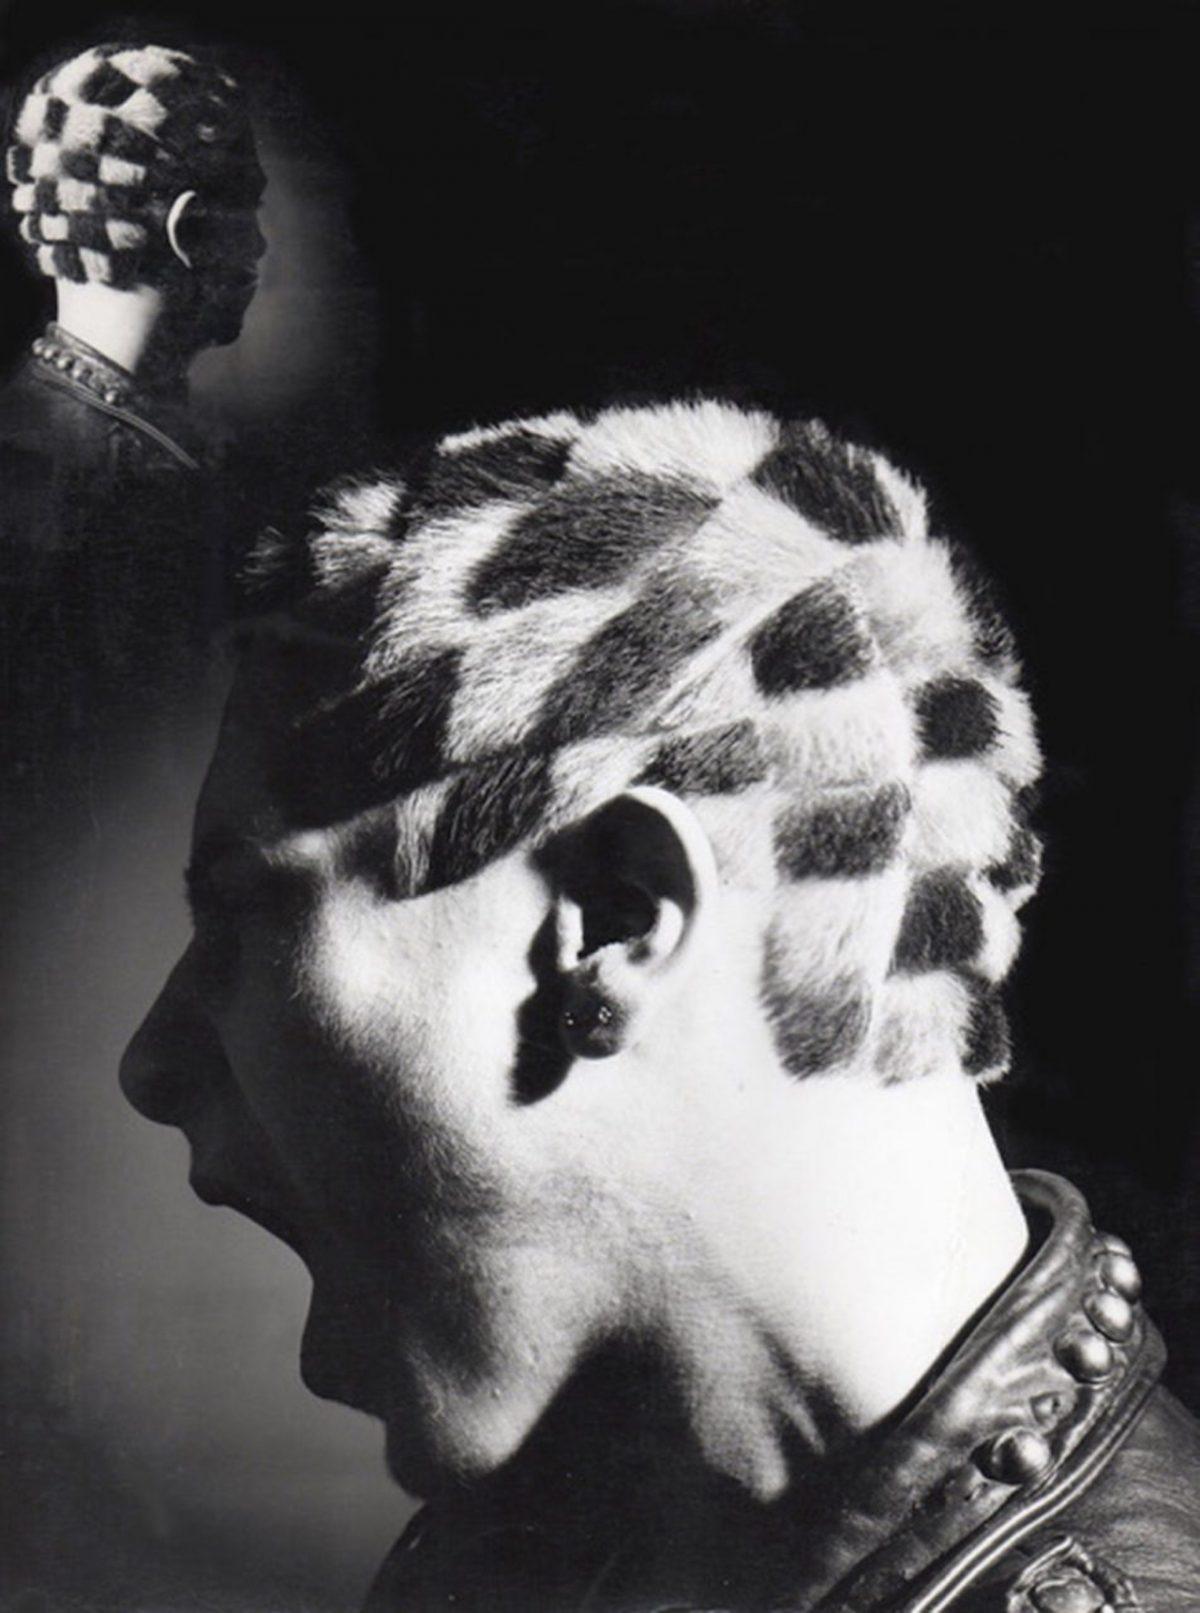 Redécouvert les Cheveux de Portraits à Partir de COUPES, la Légendaire Londres Salon de Style des années 80 sous-Cultures